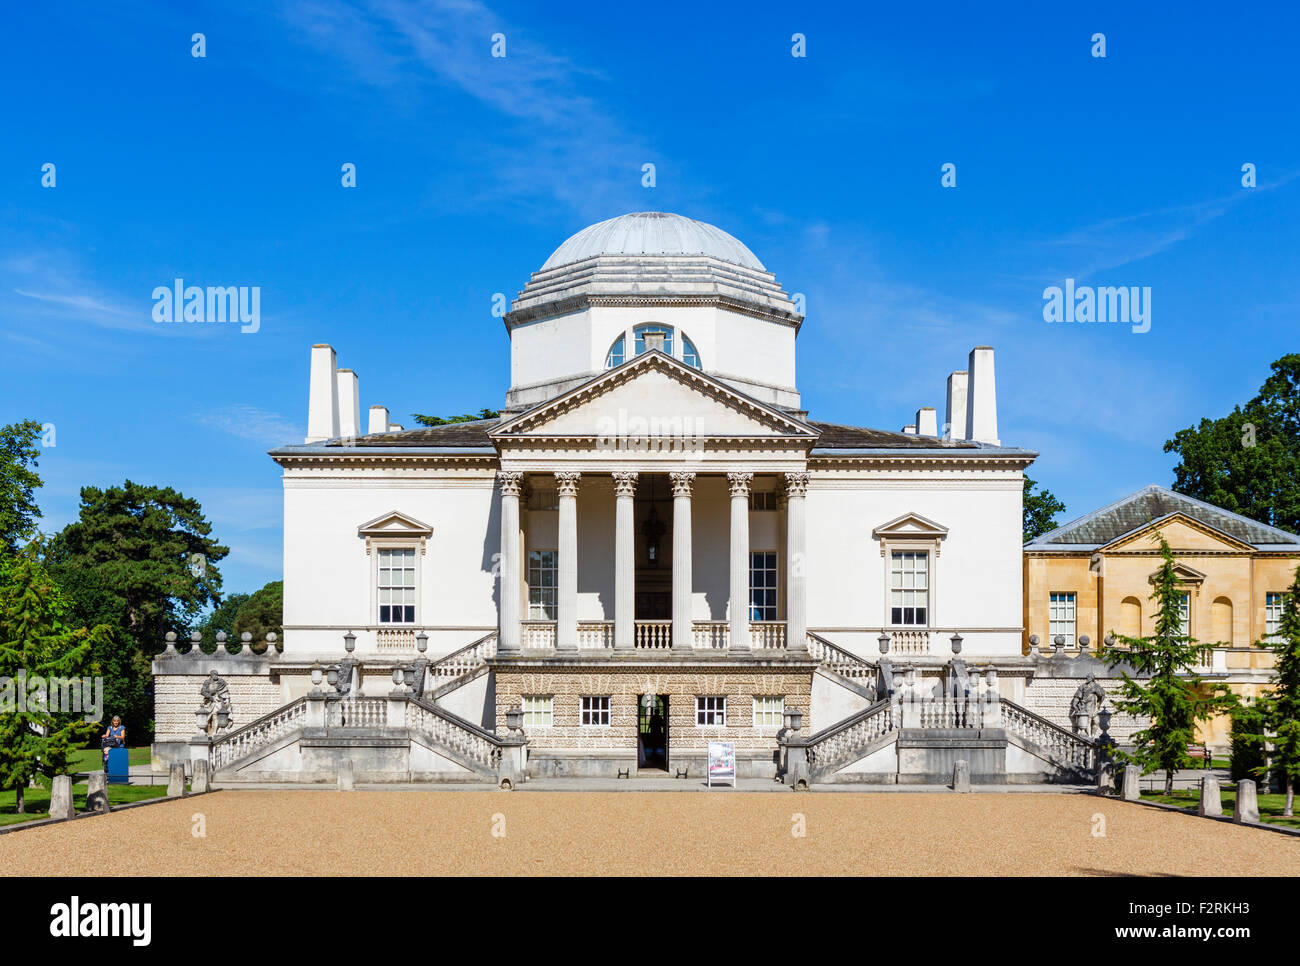 Chiswick House, un des premiers 18thC villa palladienne à Chiswick, Londres, Angleterre, Royaume-Uni Banque D'Images